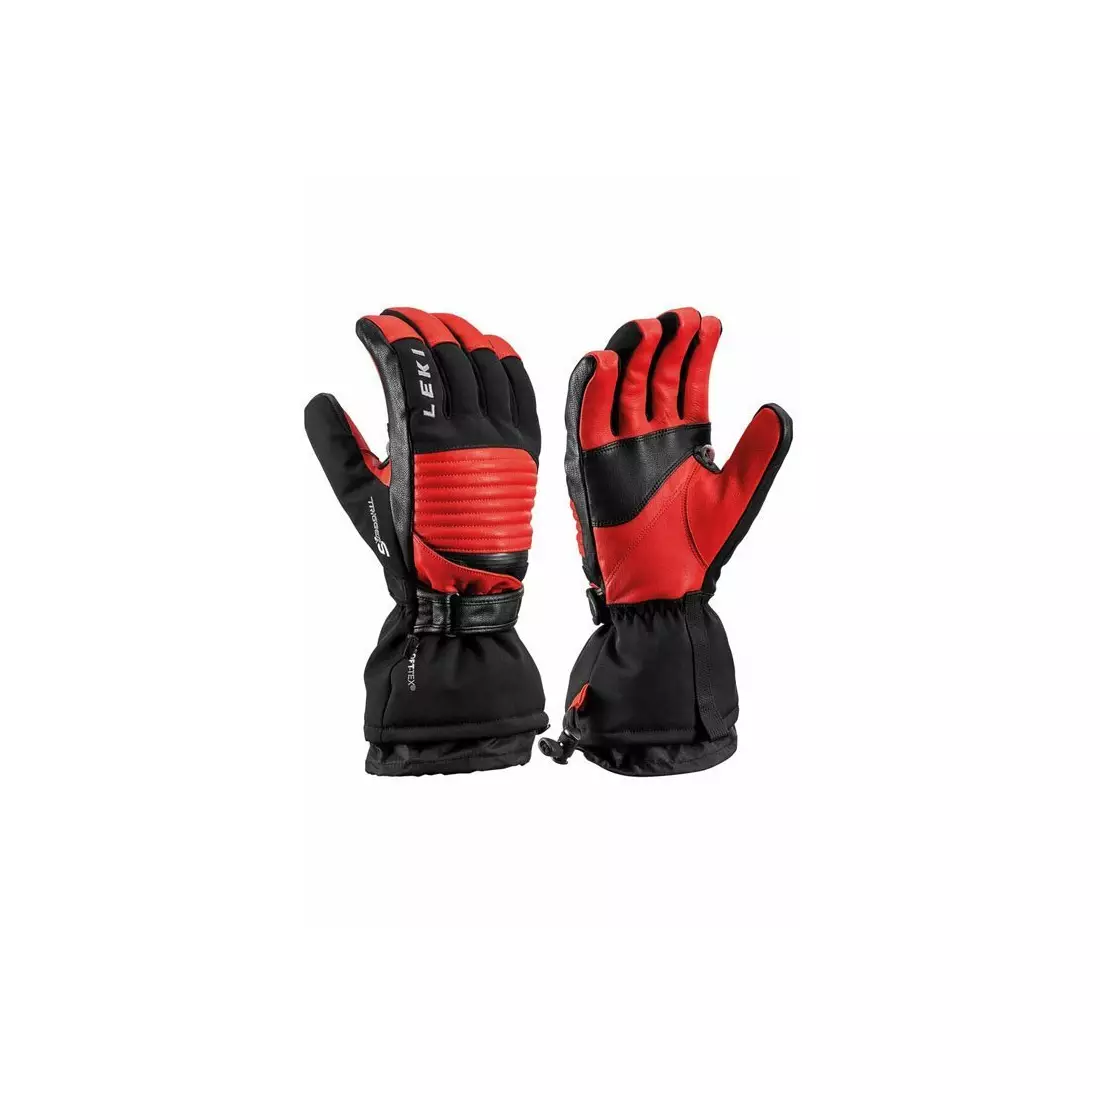 LEKI Damskie rękawiczki narciarskie, Xplore XT S vintage, red-black, 643840303100